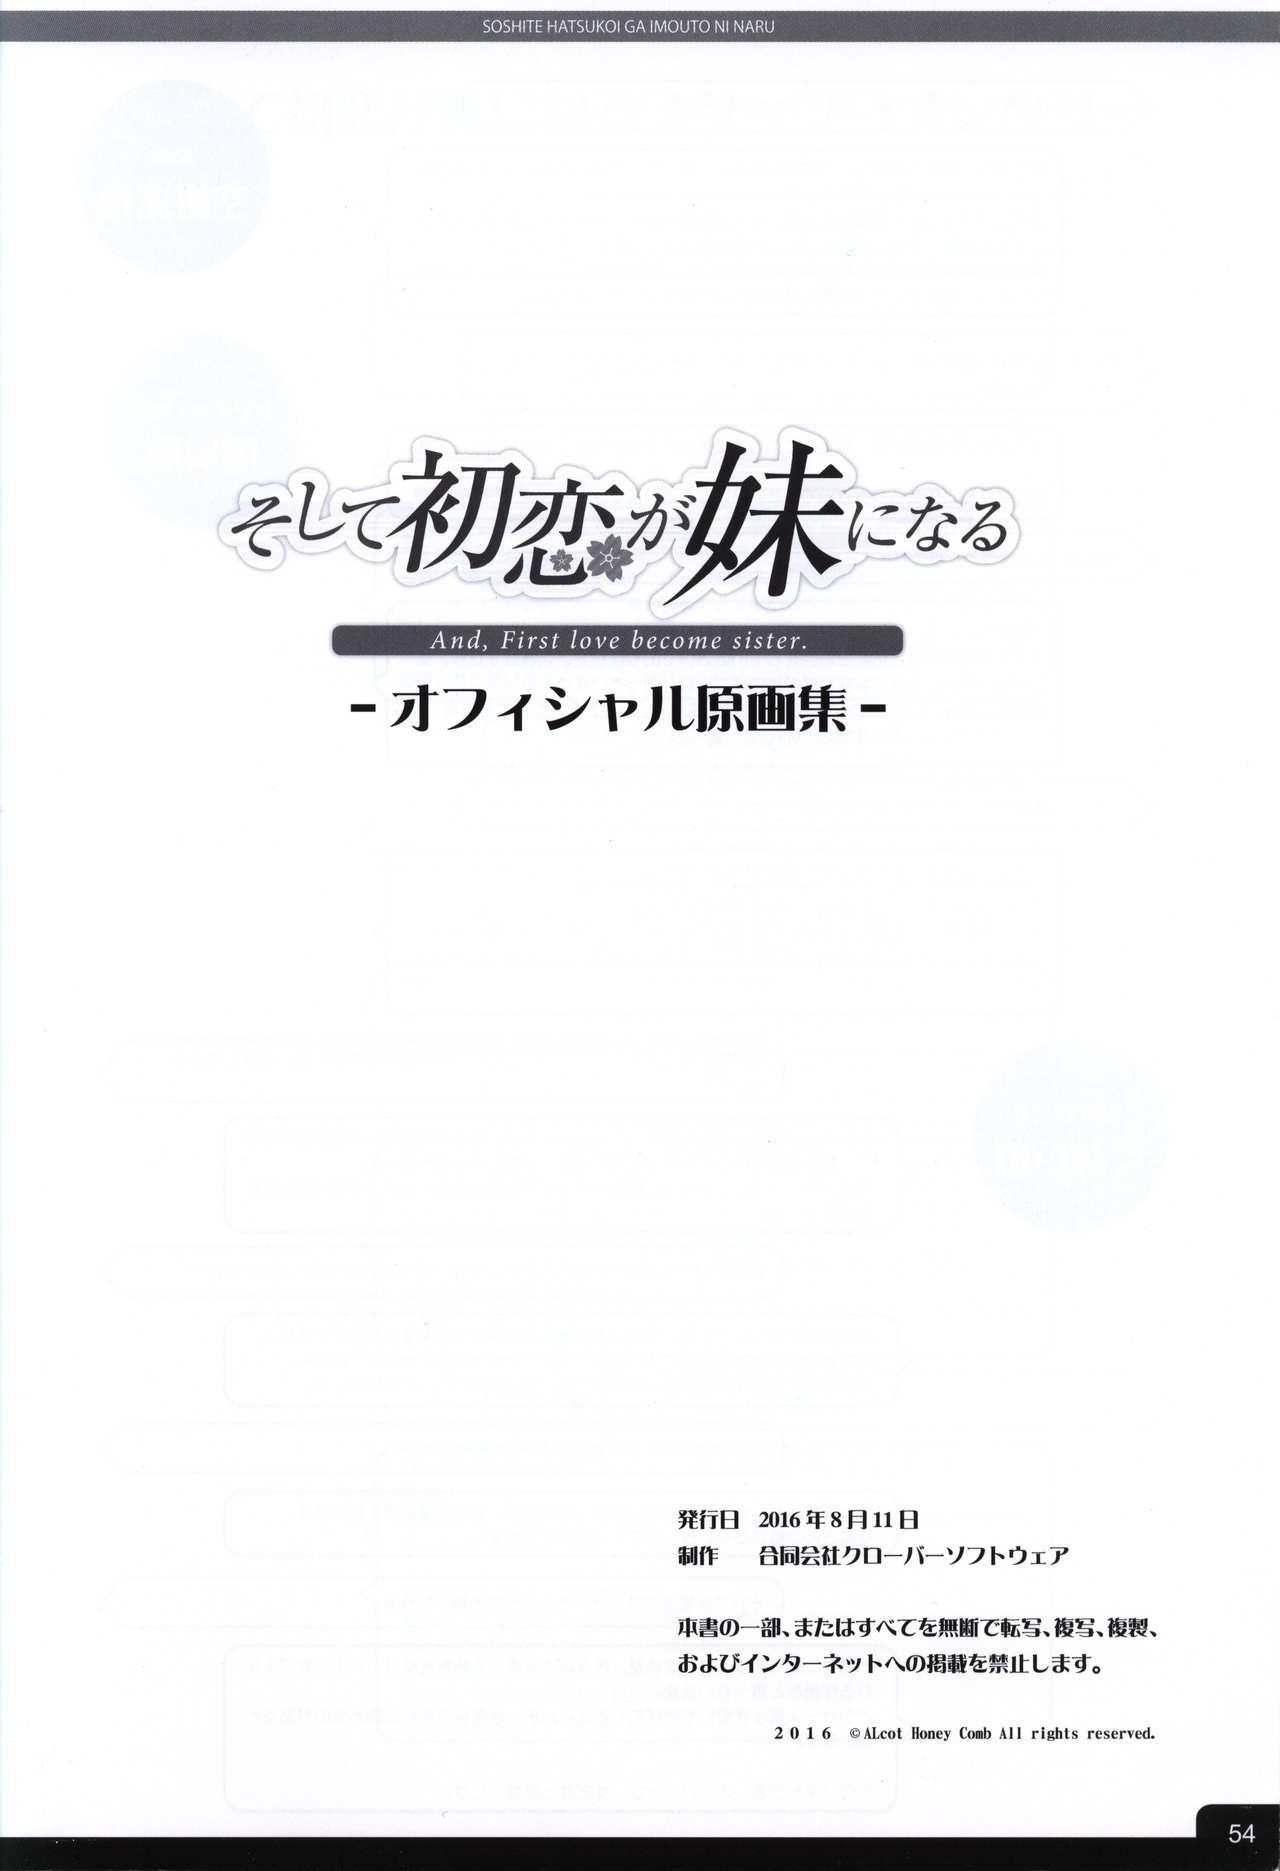 Soshite Hatsukoi ga Imouto ni Naru ART BOOK 55